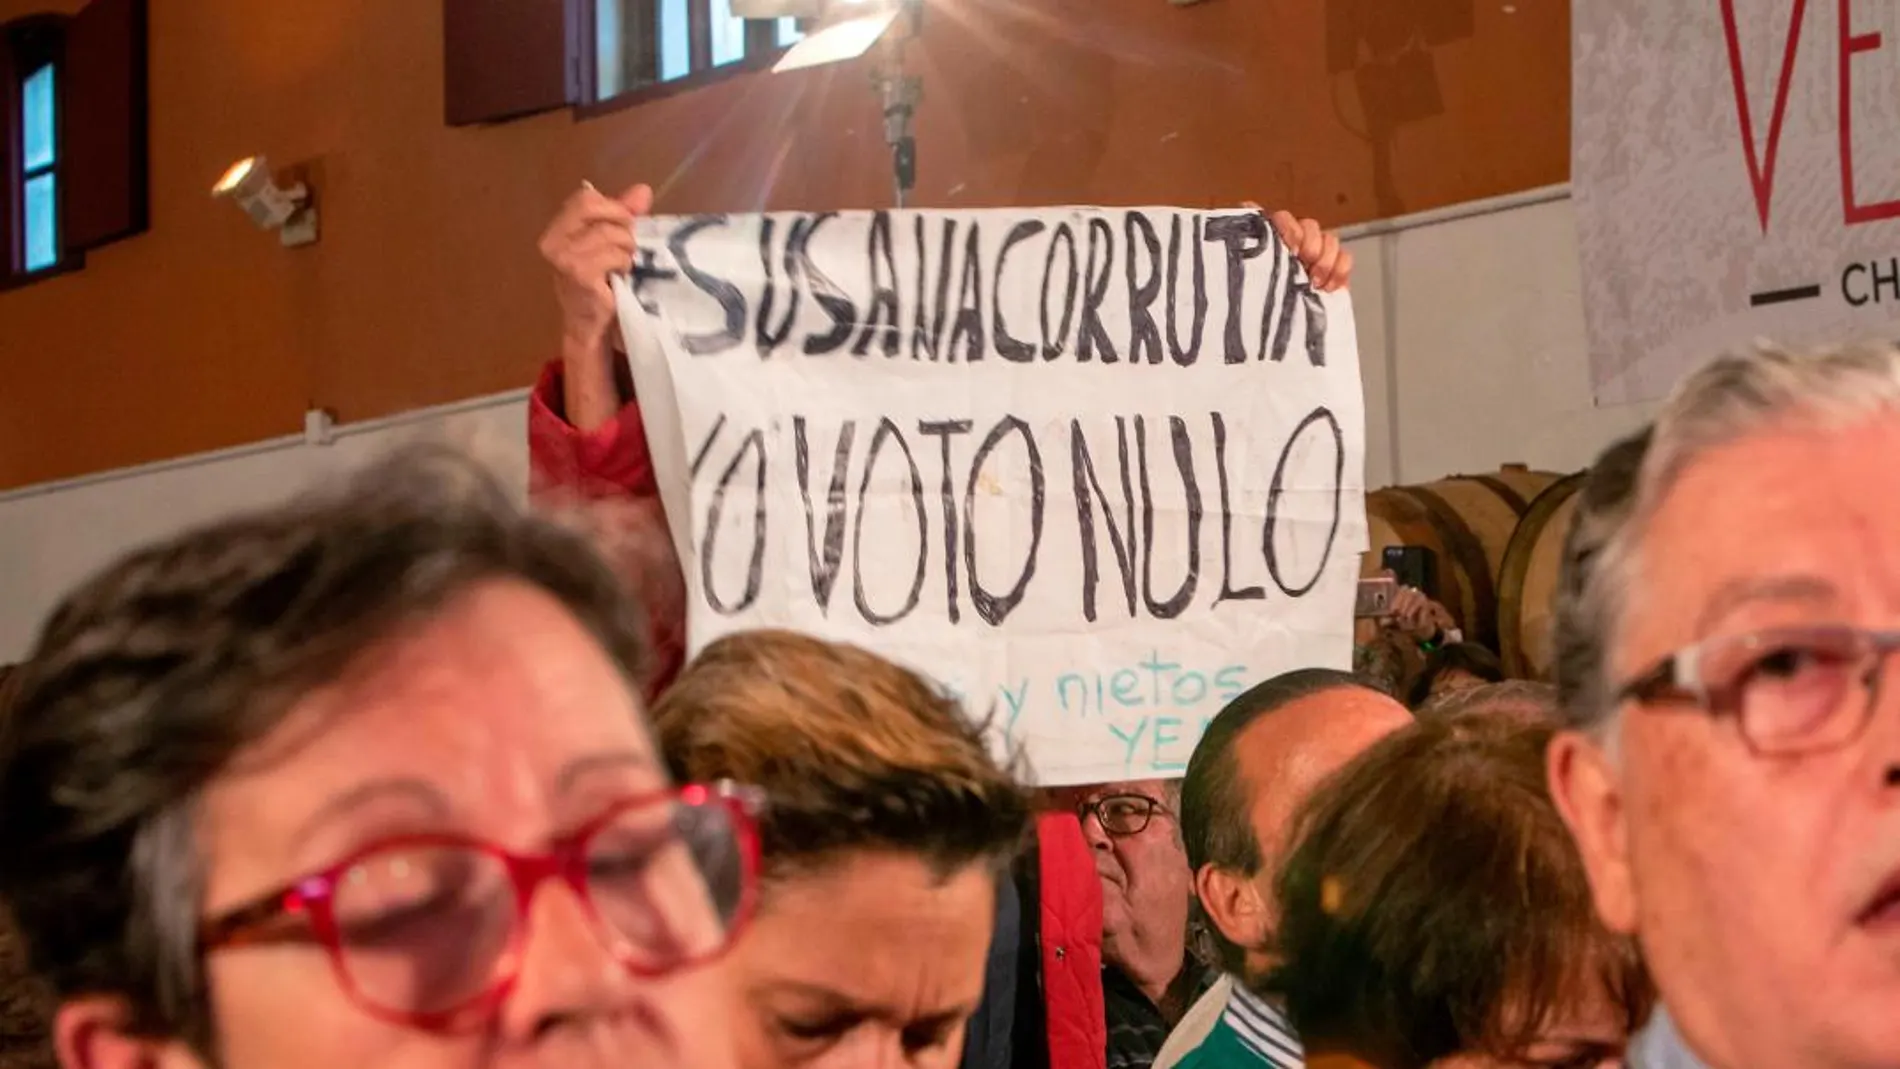 Una mujer fue desalojada tras mostrar una pancarta con el lema «Susana corrupta, voto nulo» / Foto: Efe